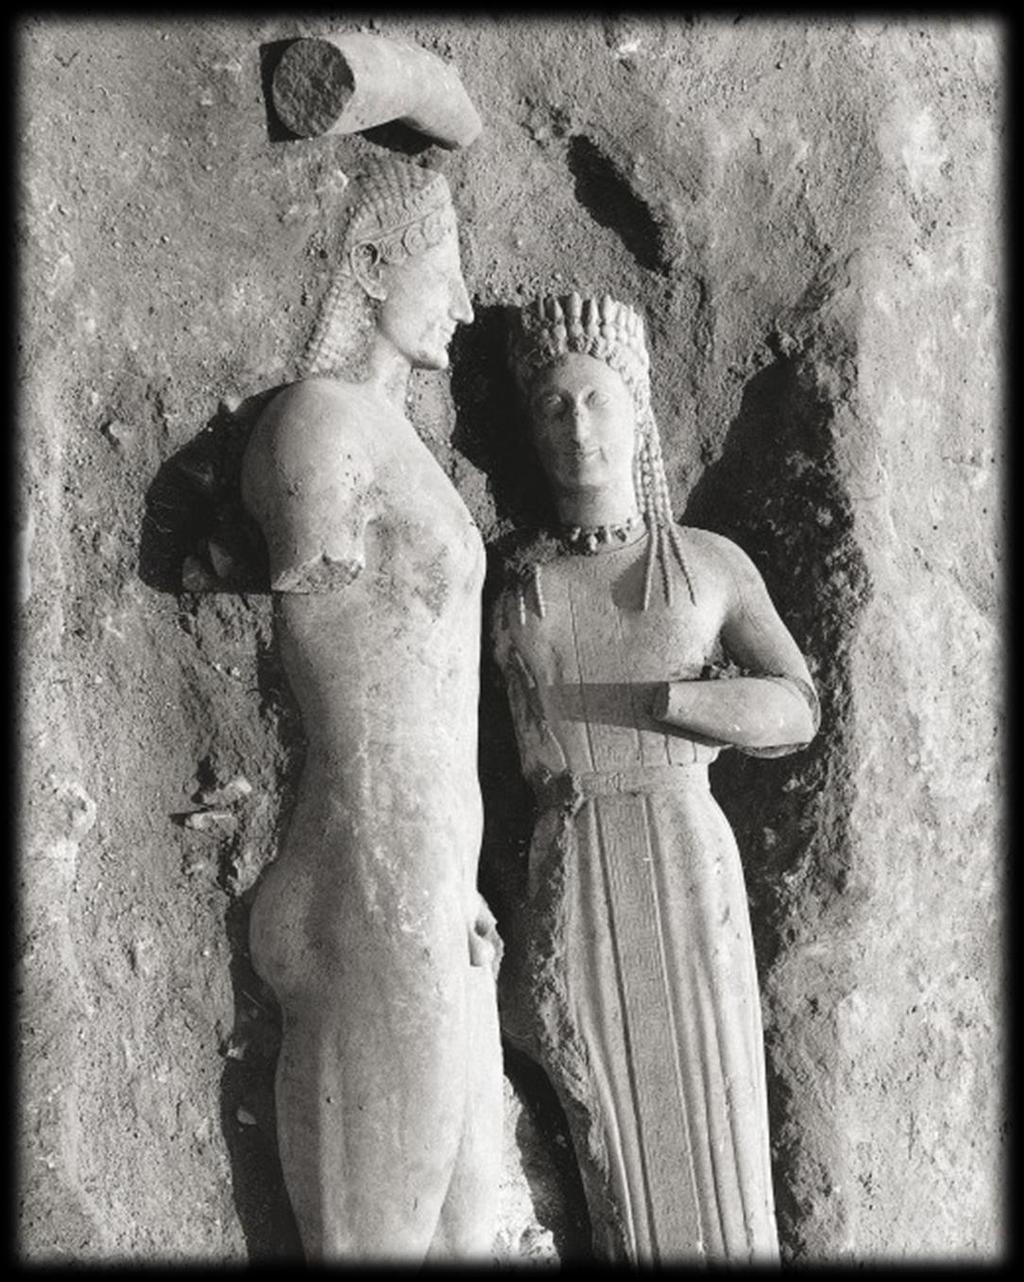 Γ. «Κάθε άγαλμα και μια ιστορία» «Εκτιμάται ότι ο Κούρος και η Κόρη ενταφιάστηκαν το 480 490 π.χ. στην αρχαία Μυρρινούς σημερινή Μερέντα λίγο πριν από την εισβολή των Περσών.